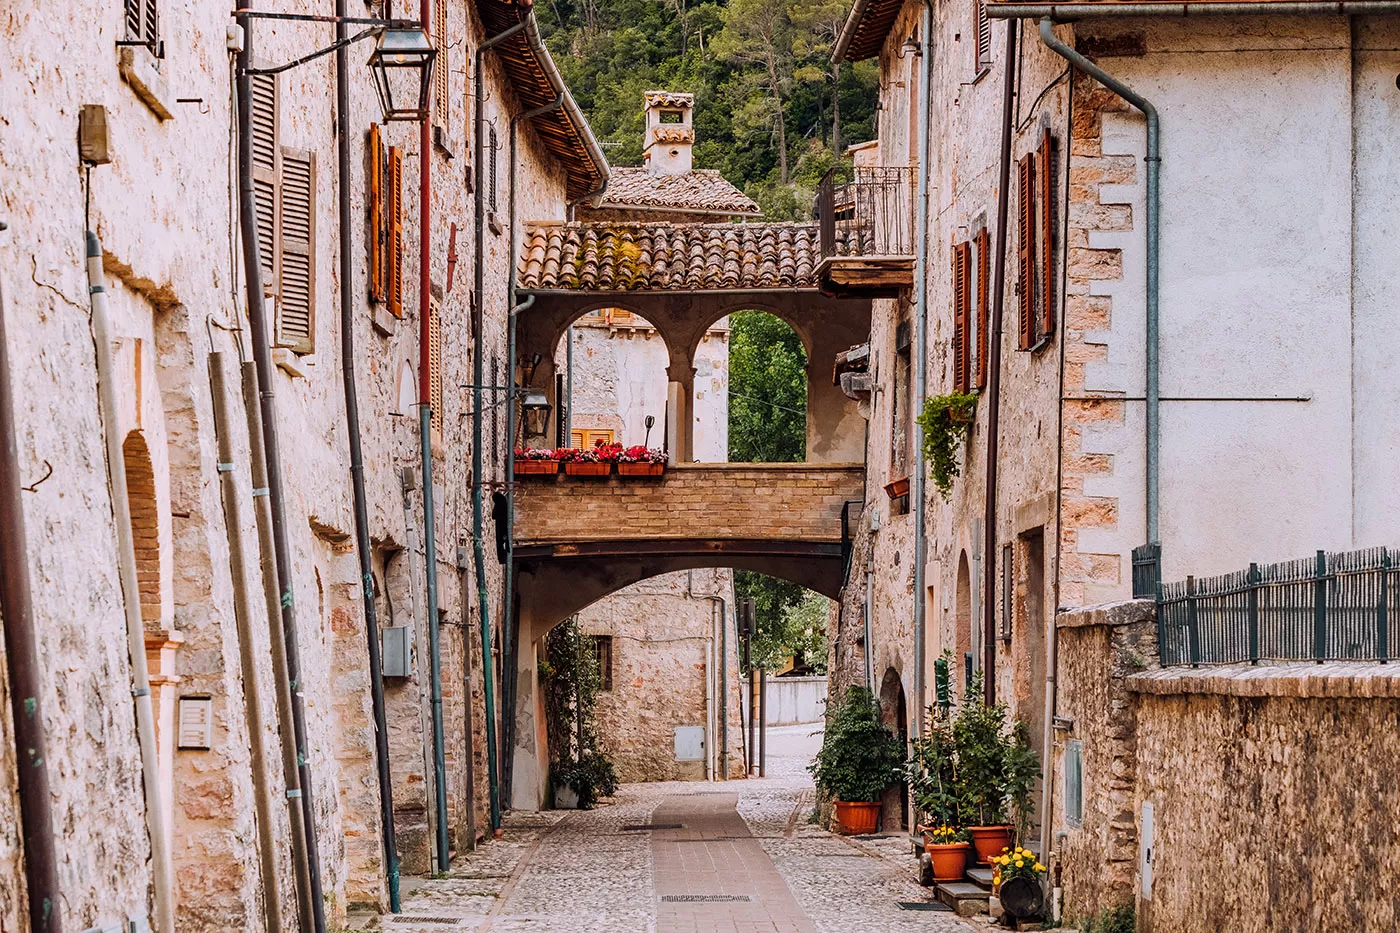 Things to do in Umbria Italy - Scheggino quiet road